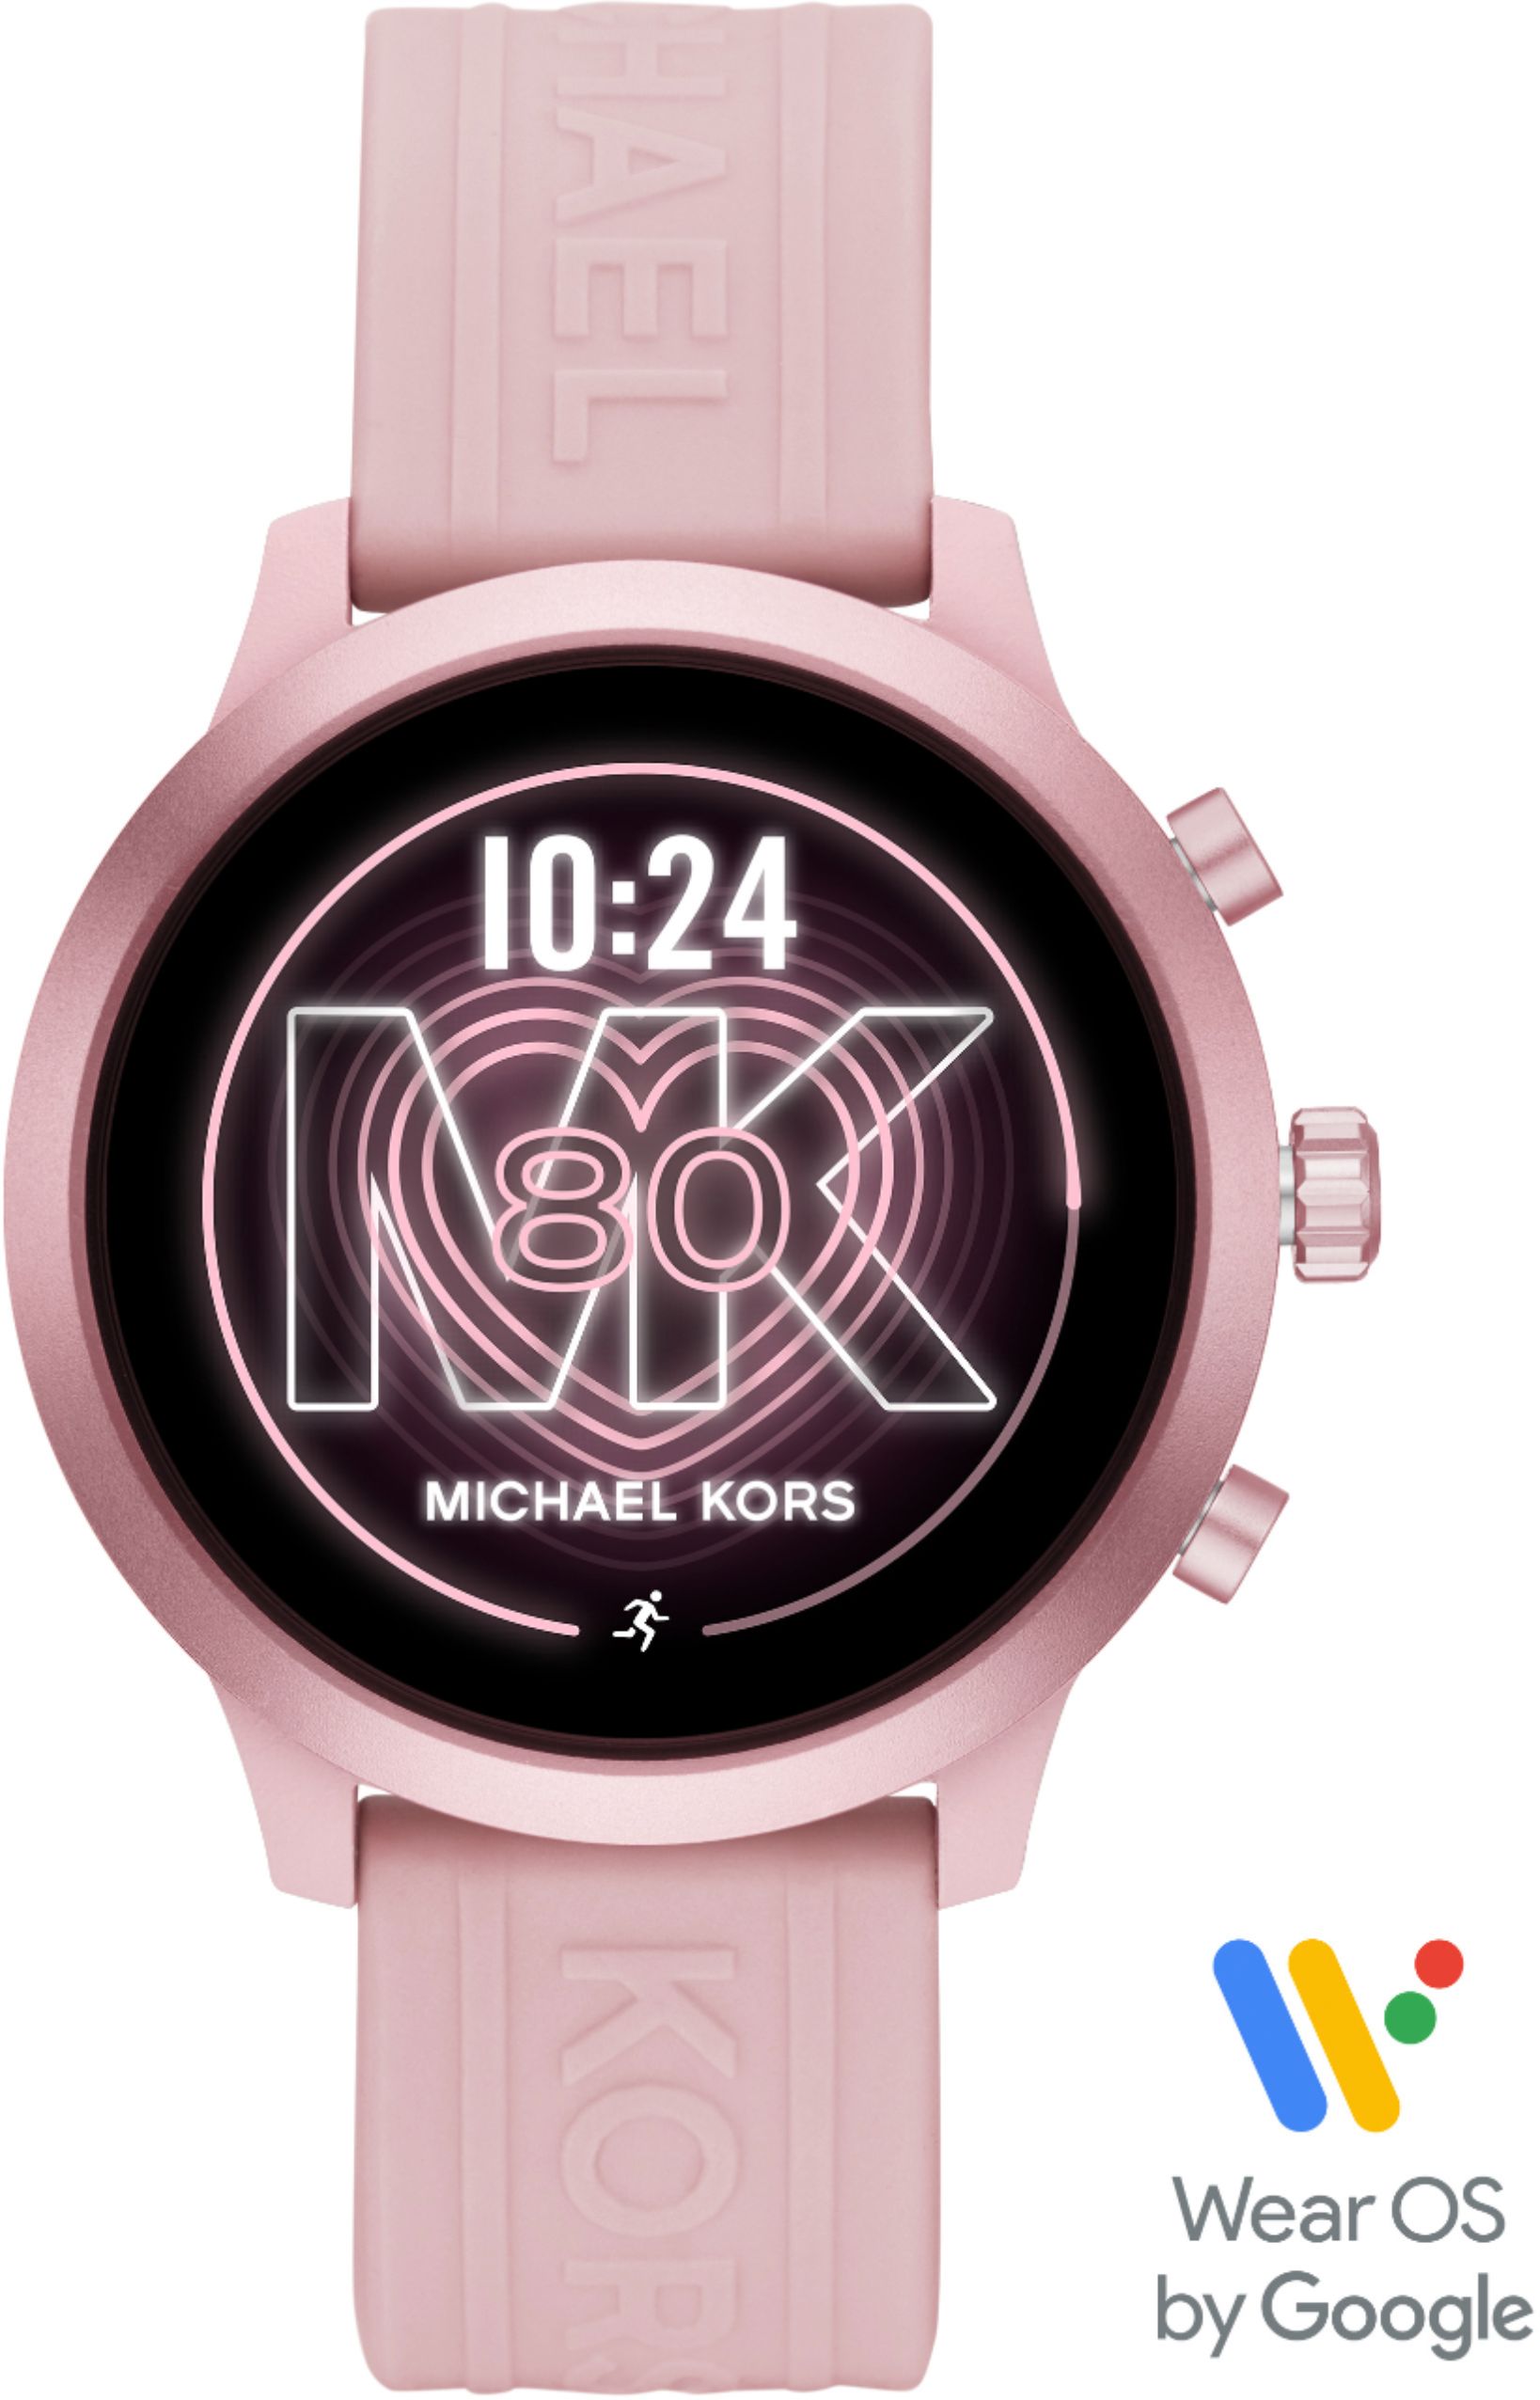 michael kors smartwatch apple compatible